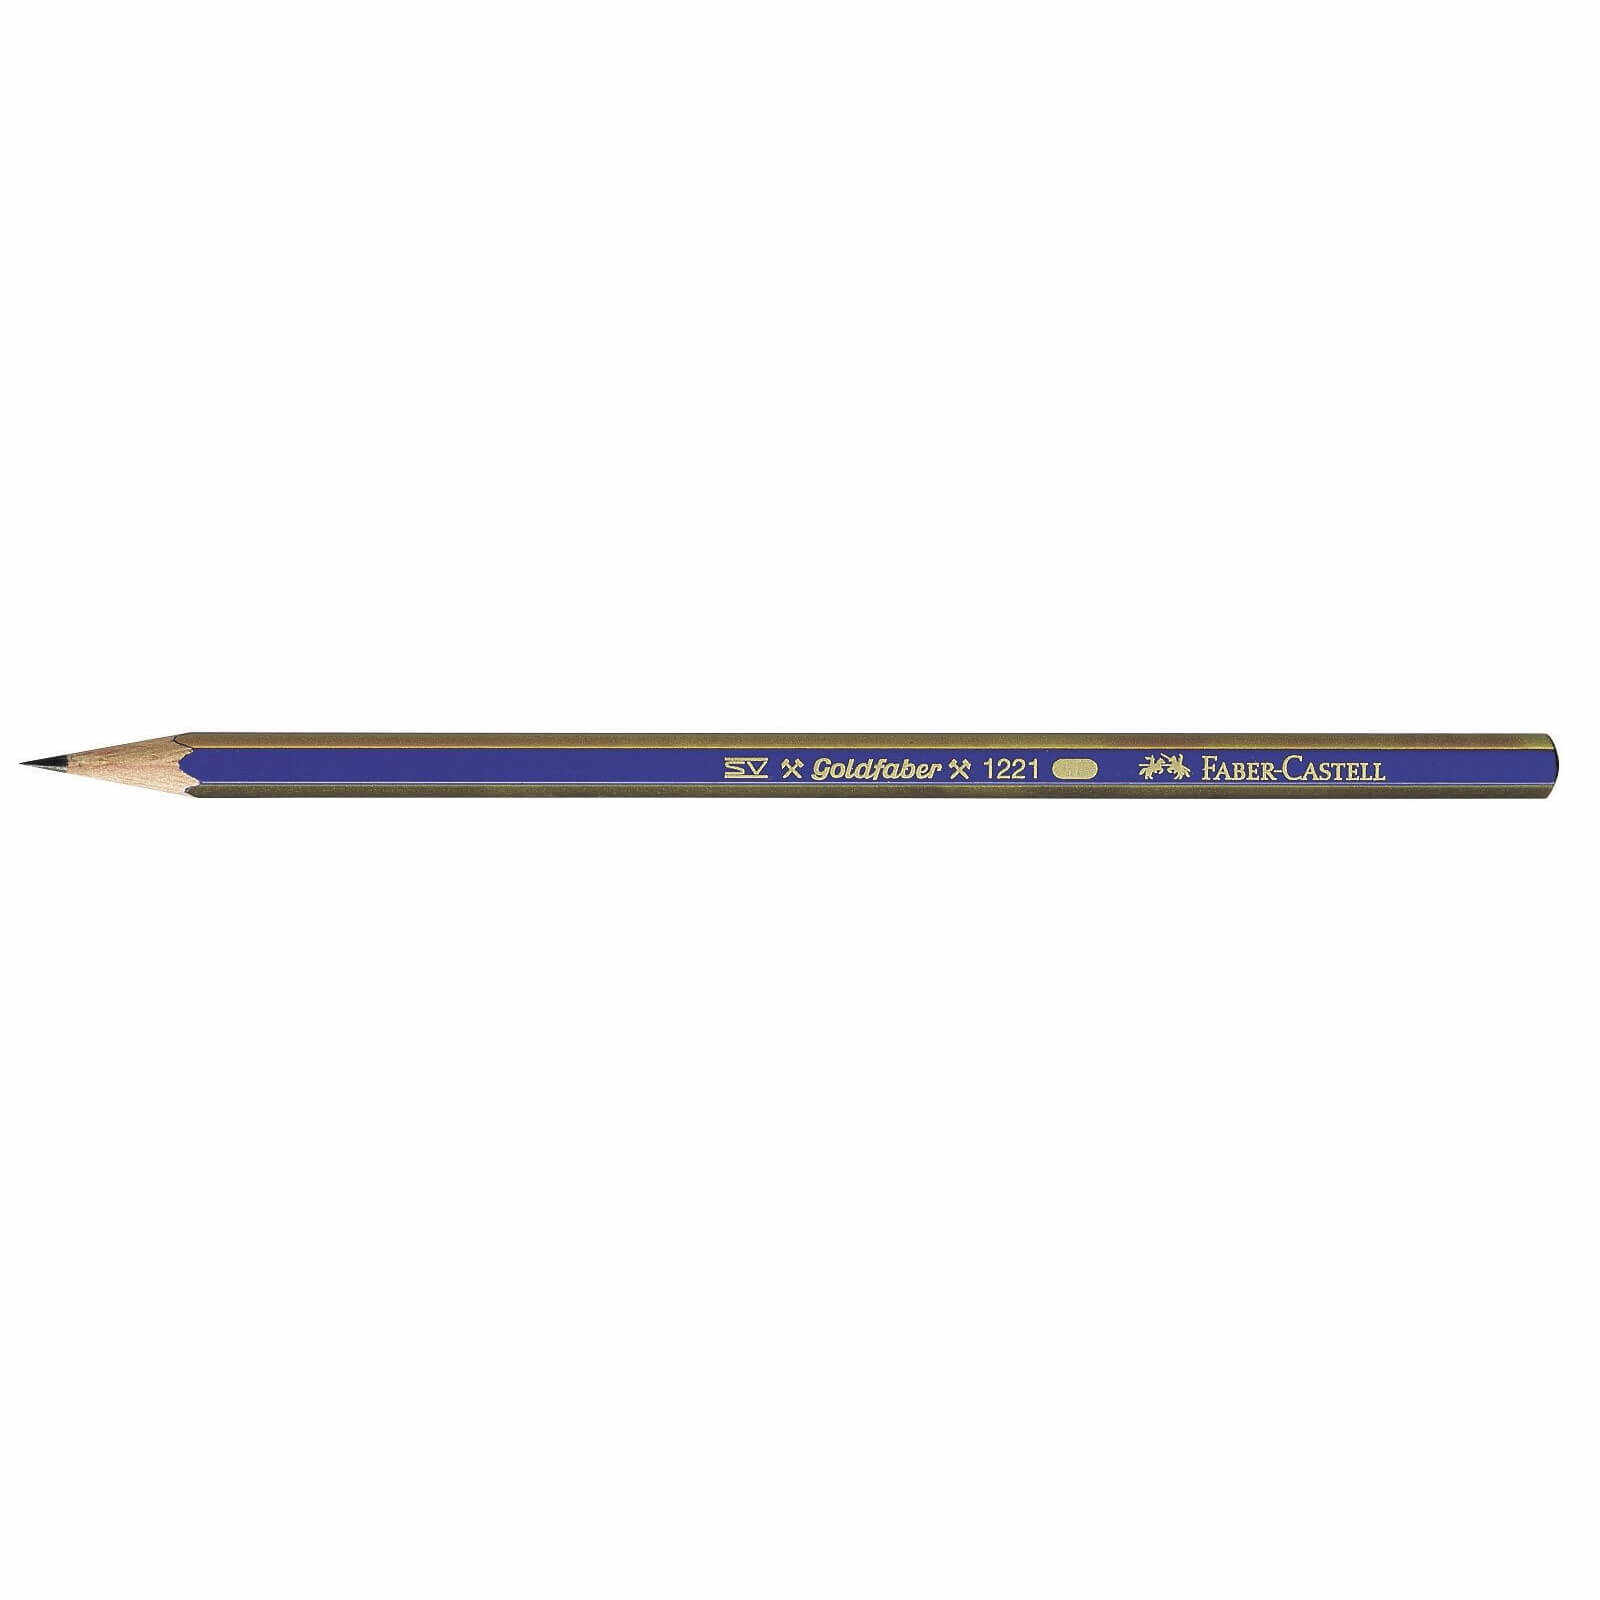 Creion grafit Goldfaber fara guma - 4B